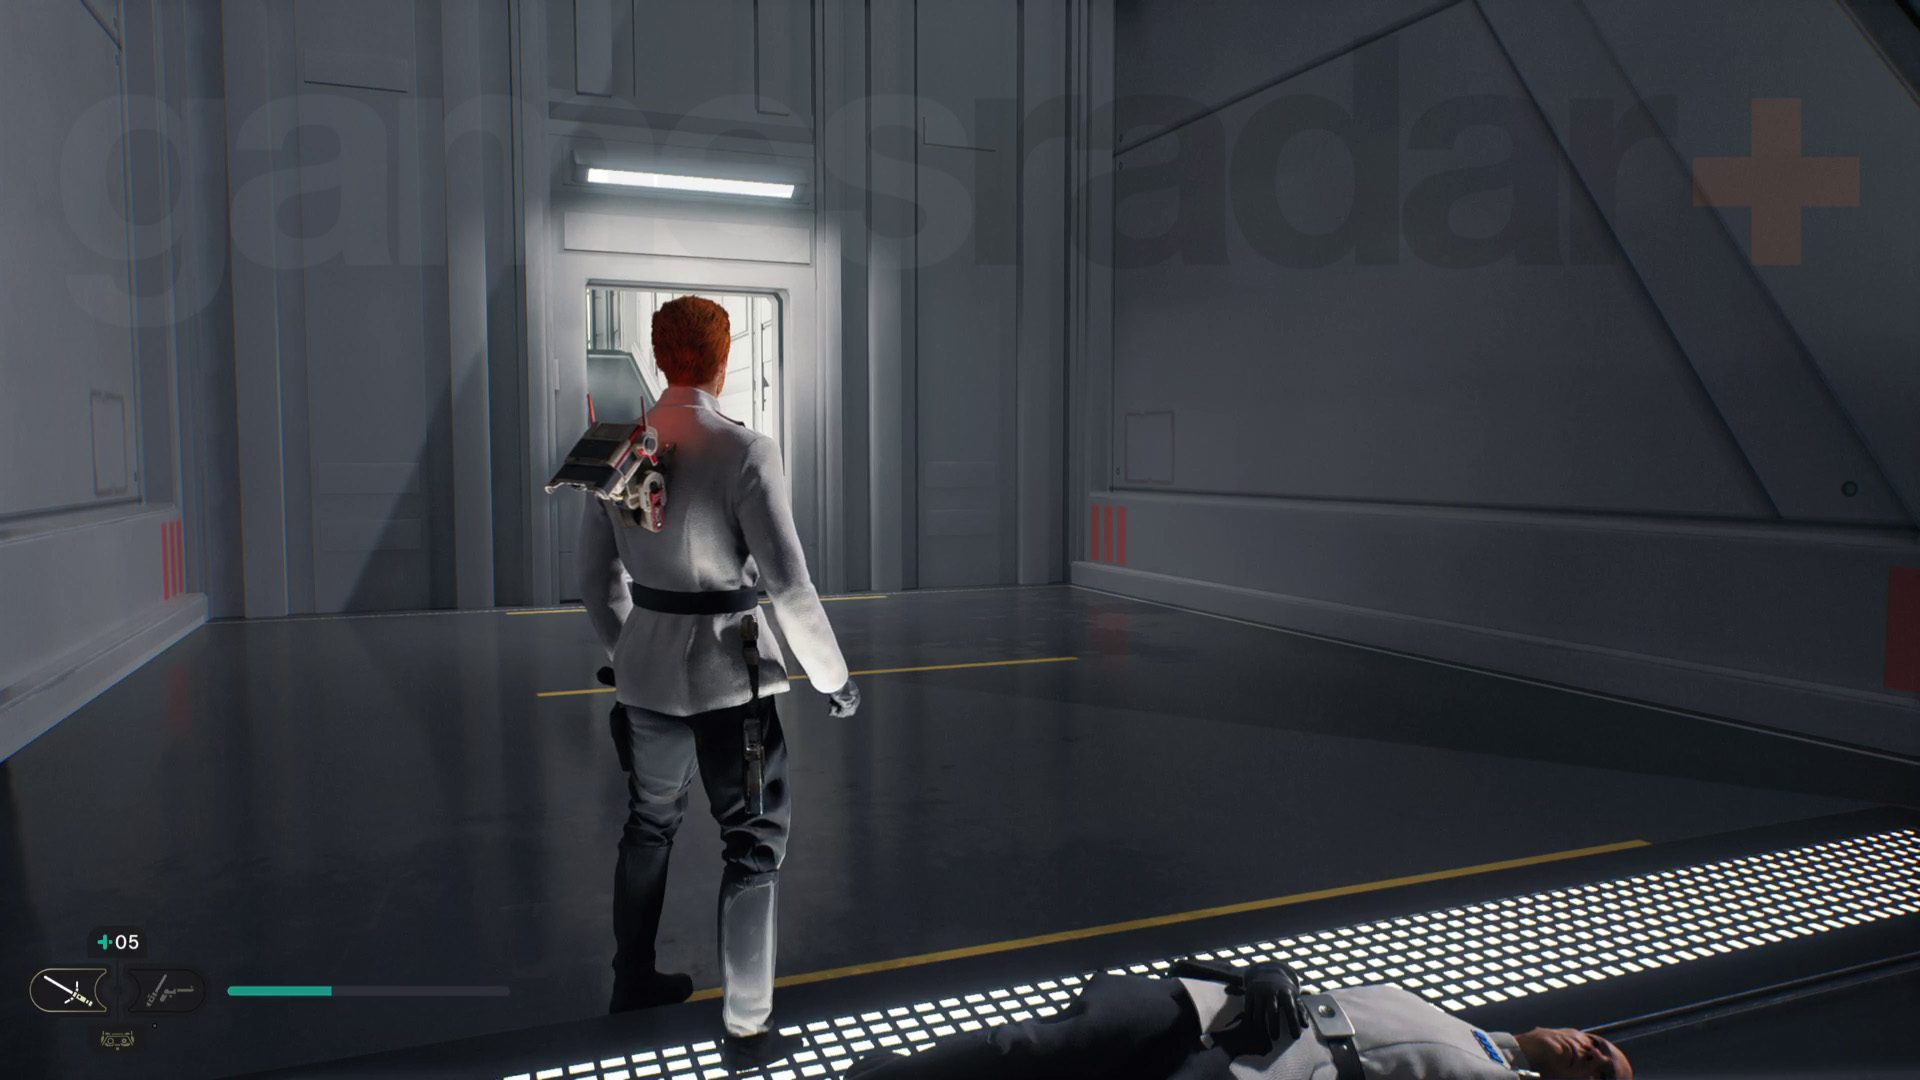 حرب النجوم Jedi الناجية نوفا غارون تجول في كال في مقنه الموحد الذي يقف أمام ممر الخروج بالقرب من جثة القائد دنيفيك